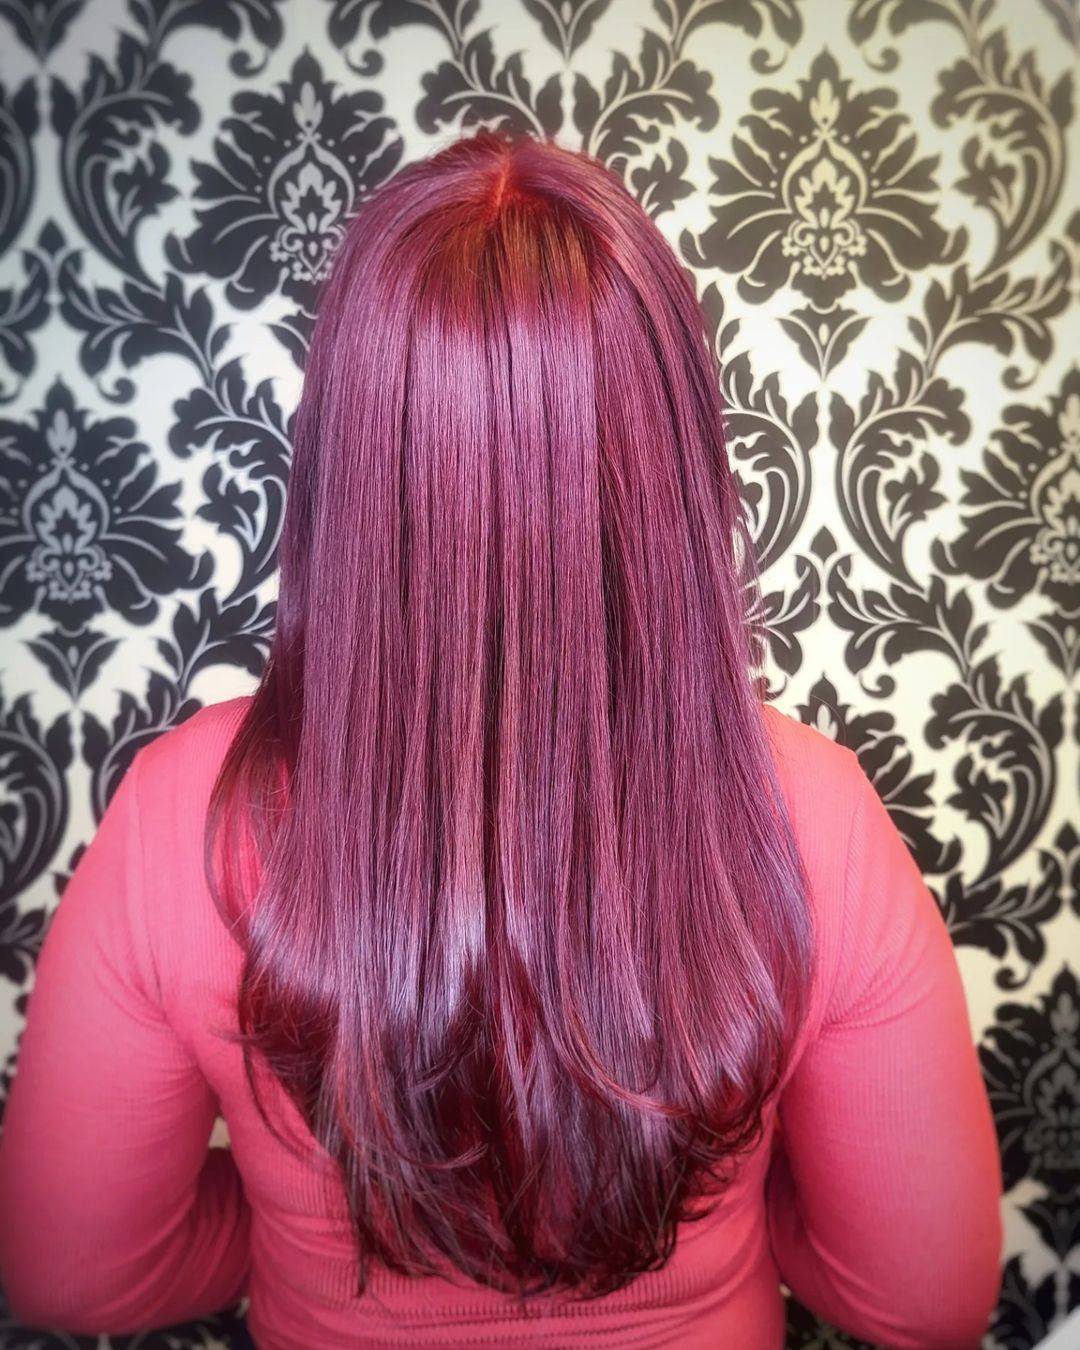 Burgundy hair color 294 burgundy hair color | burgundy hair color for women | burgundy hair color highlights Burgundy Hair Color